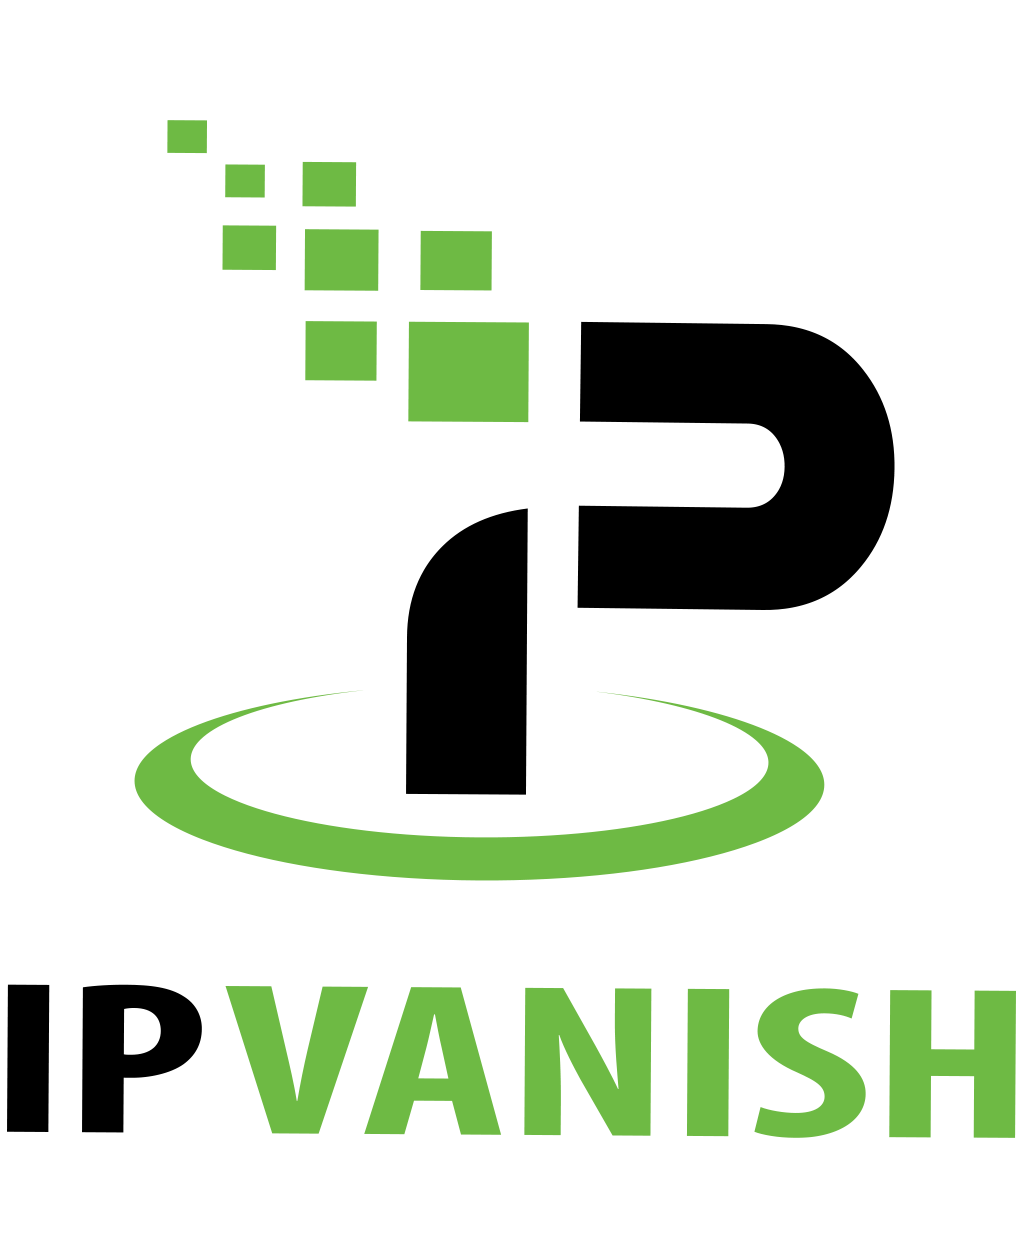 ipvanish full logo